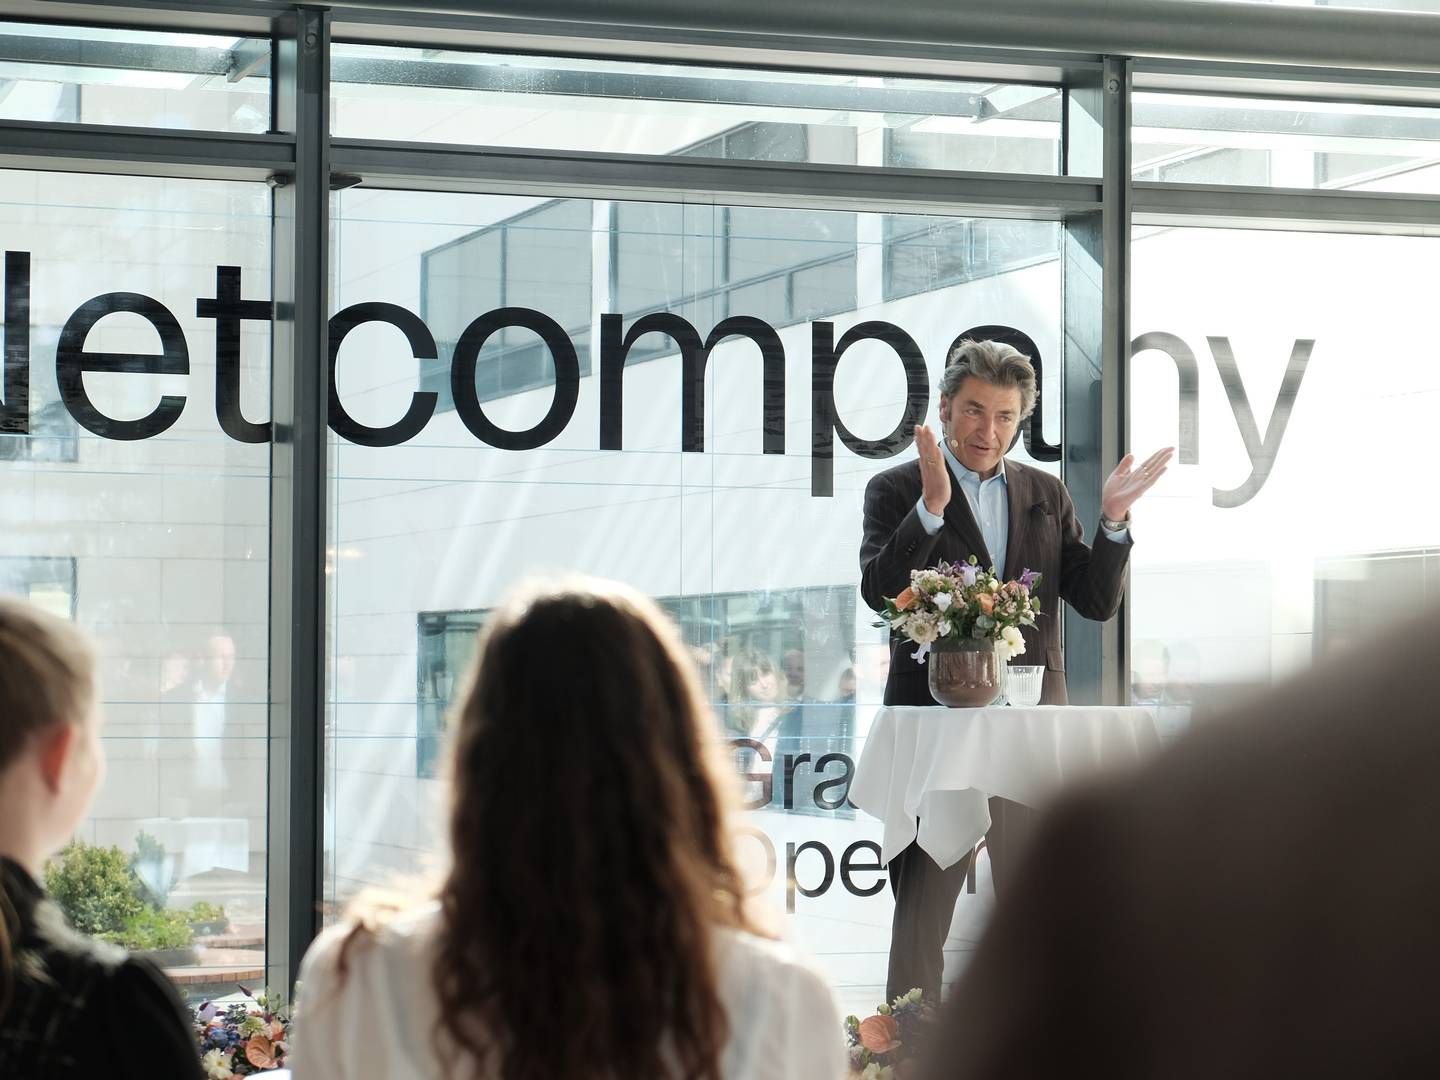 Adm. direktør Andre Rogaczewski fra Netcompany aflægger regnskab for første kvartal torsdag - og der kan være udsigt til vækst i omsætningen. | Photo: Thomas Bruun Funch